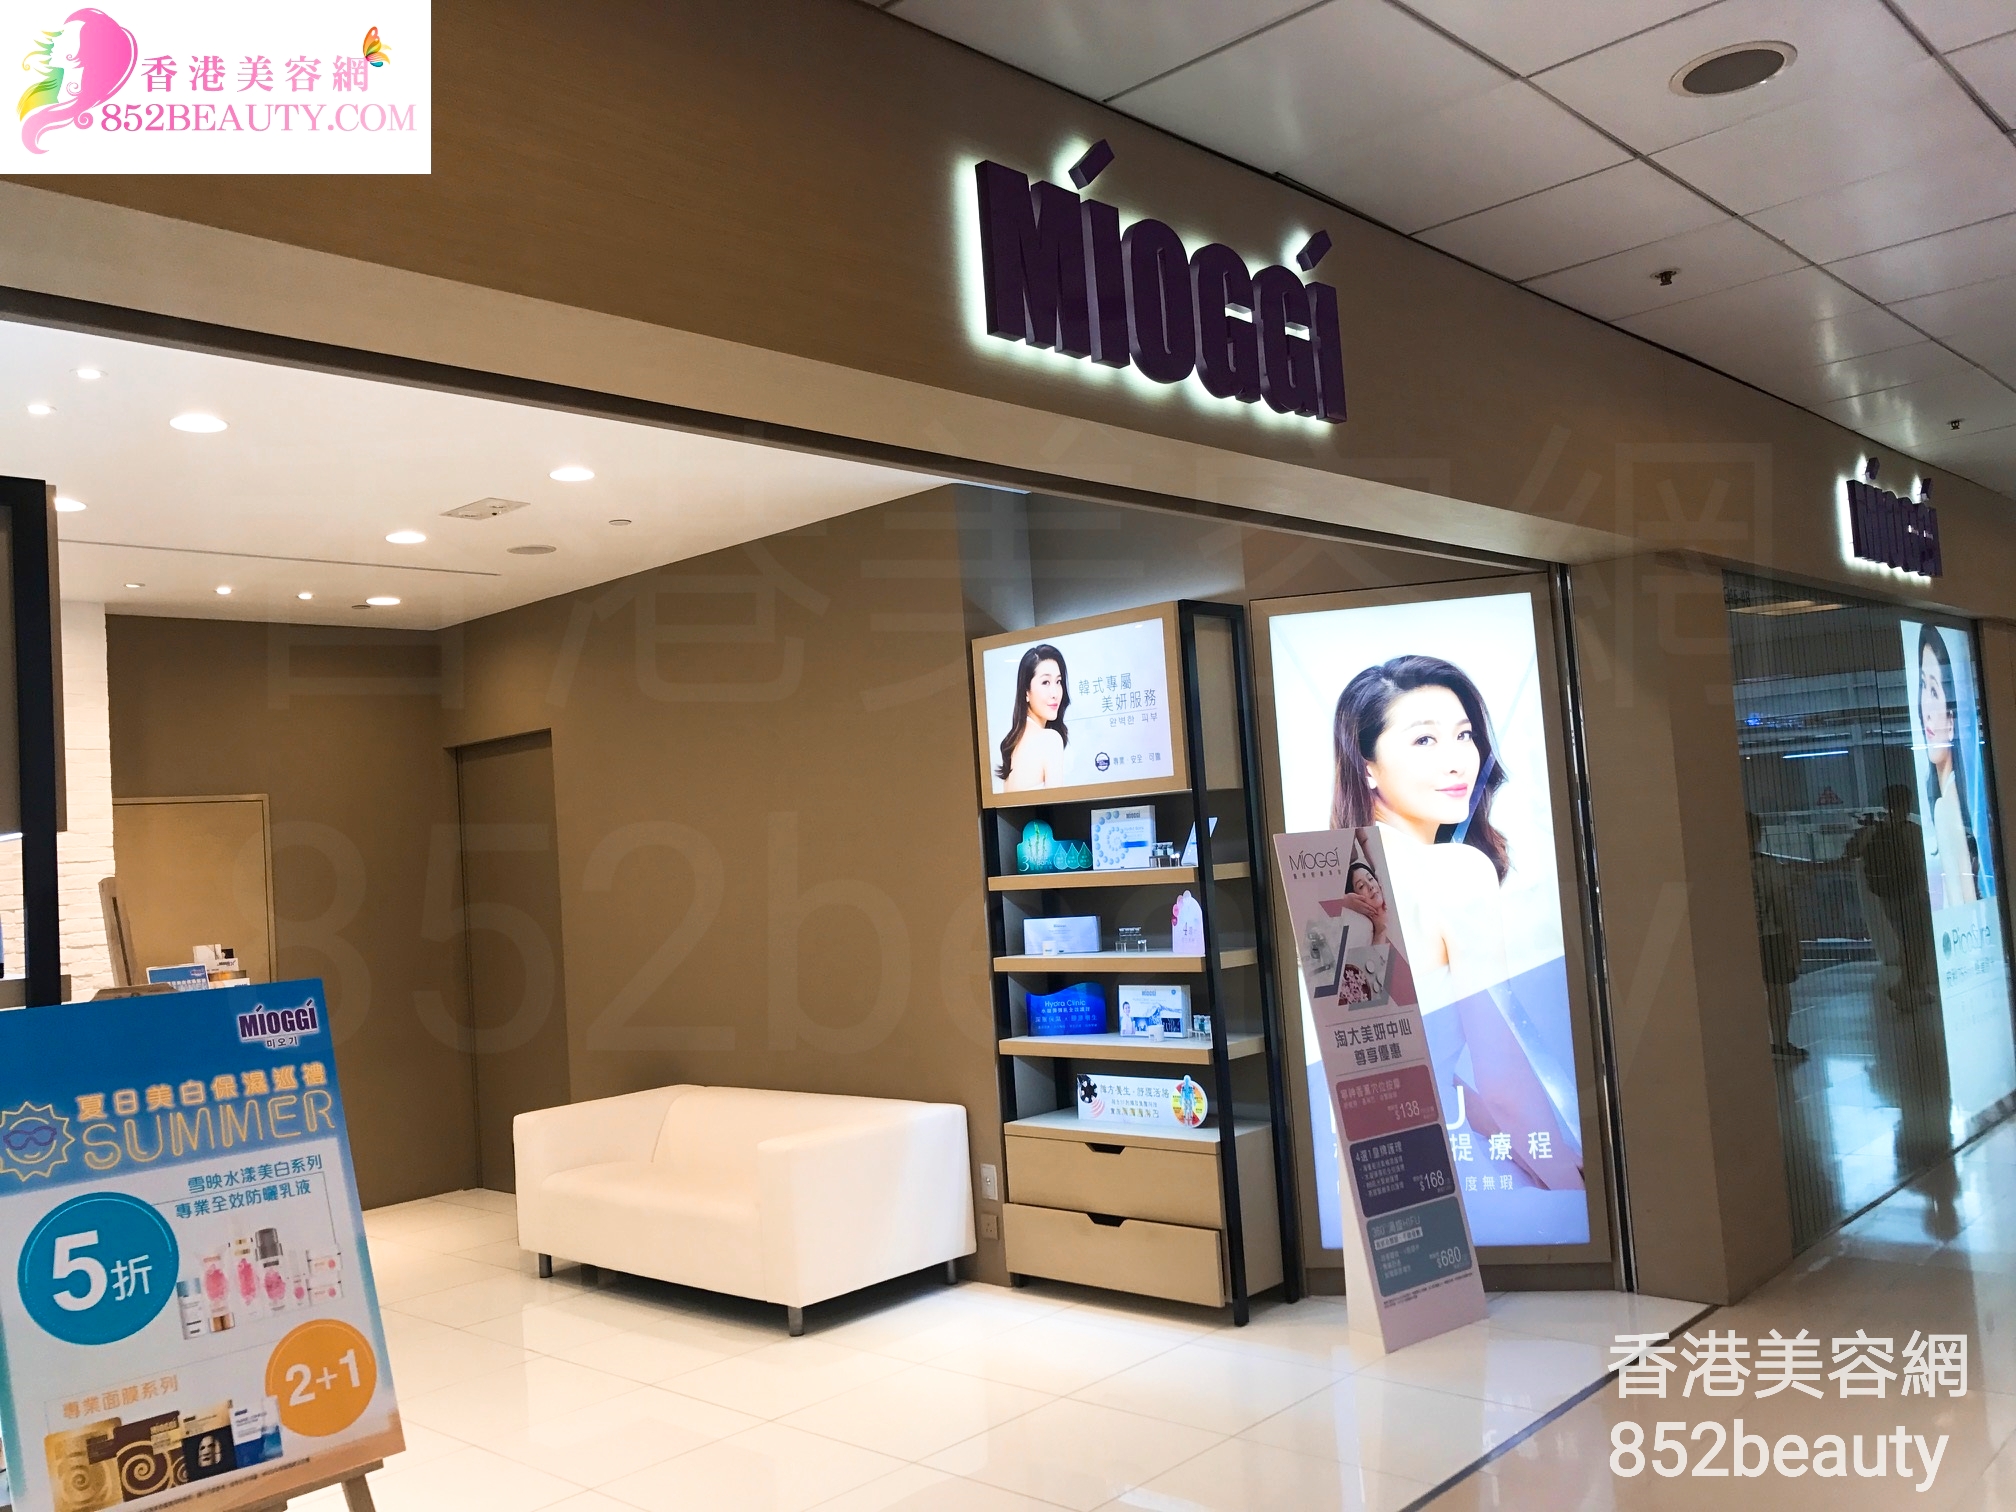 香港美容網 Hong Kong Beauty Salon 美容院 / 美容師: MIOGGI Beauty (青衣城)